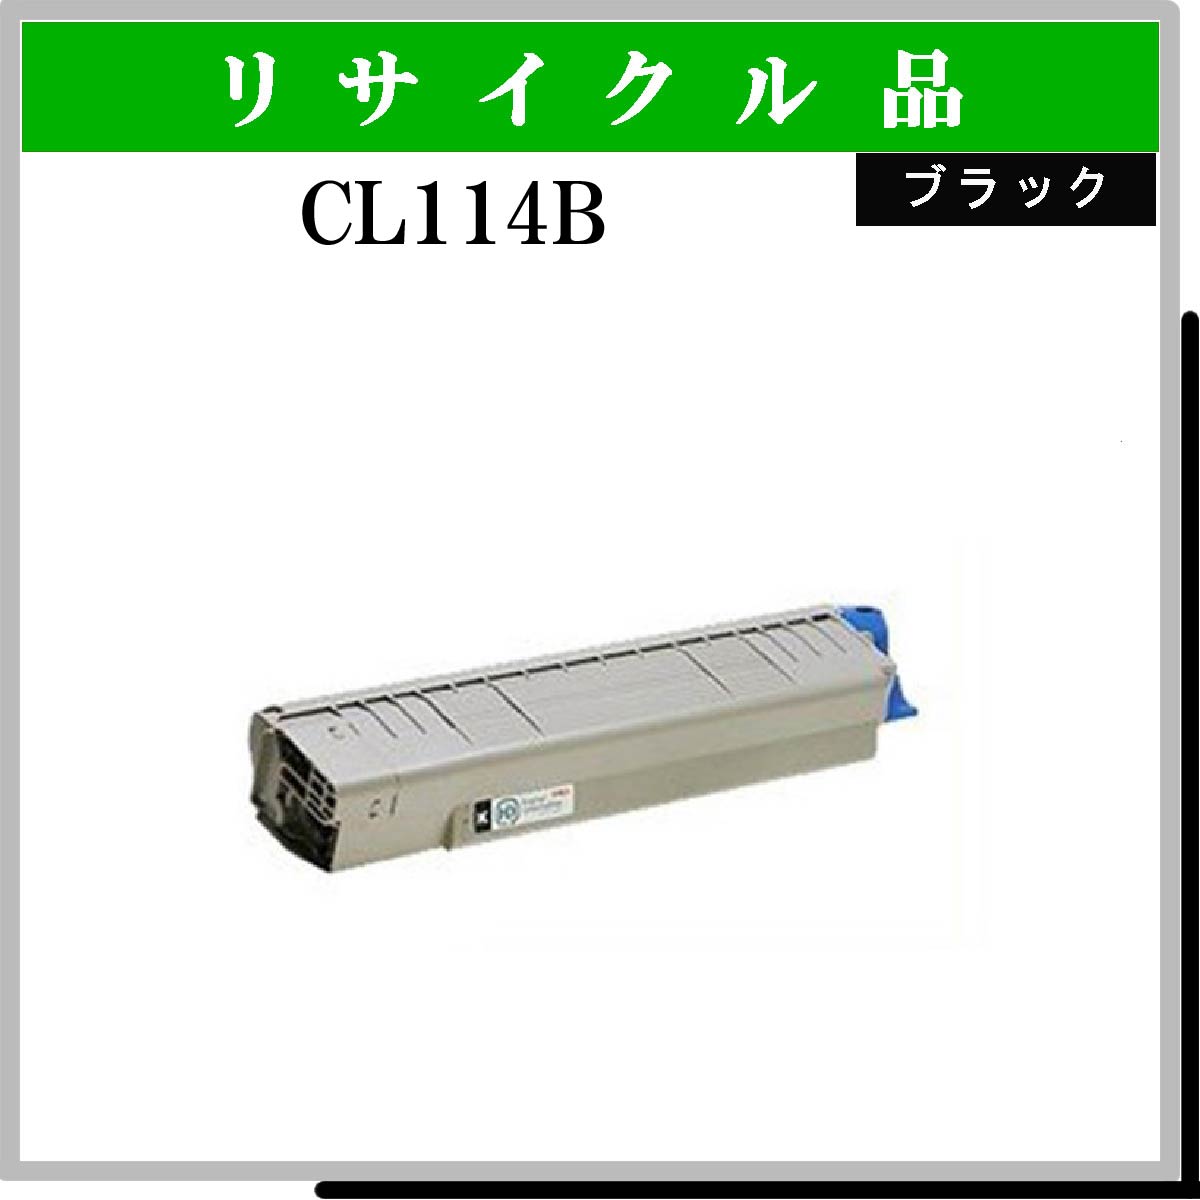 CL114B ﾌﾞﾗｯｸ